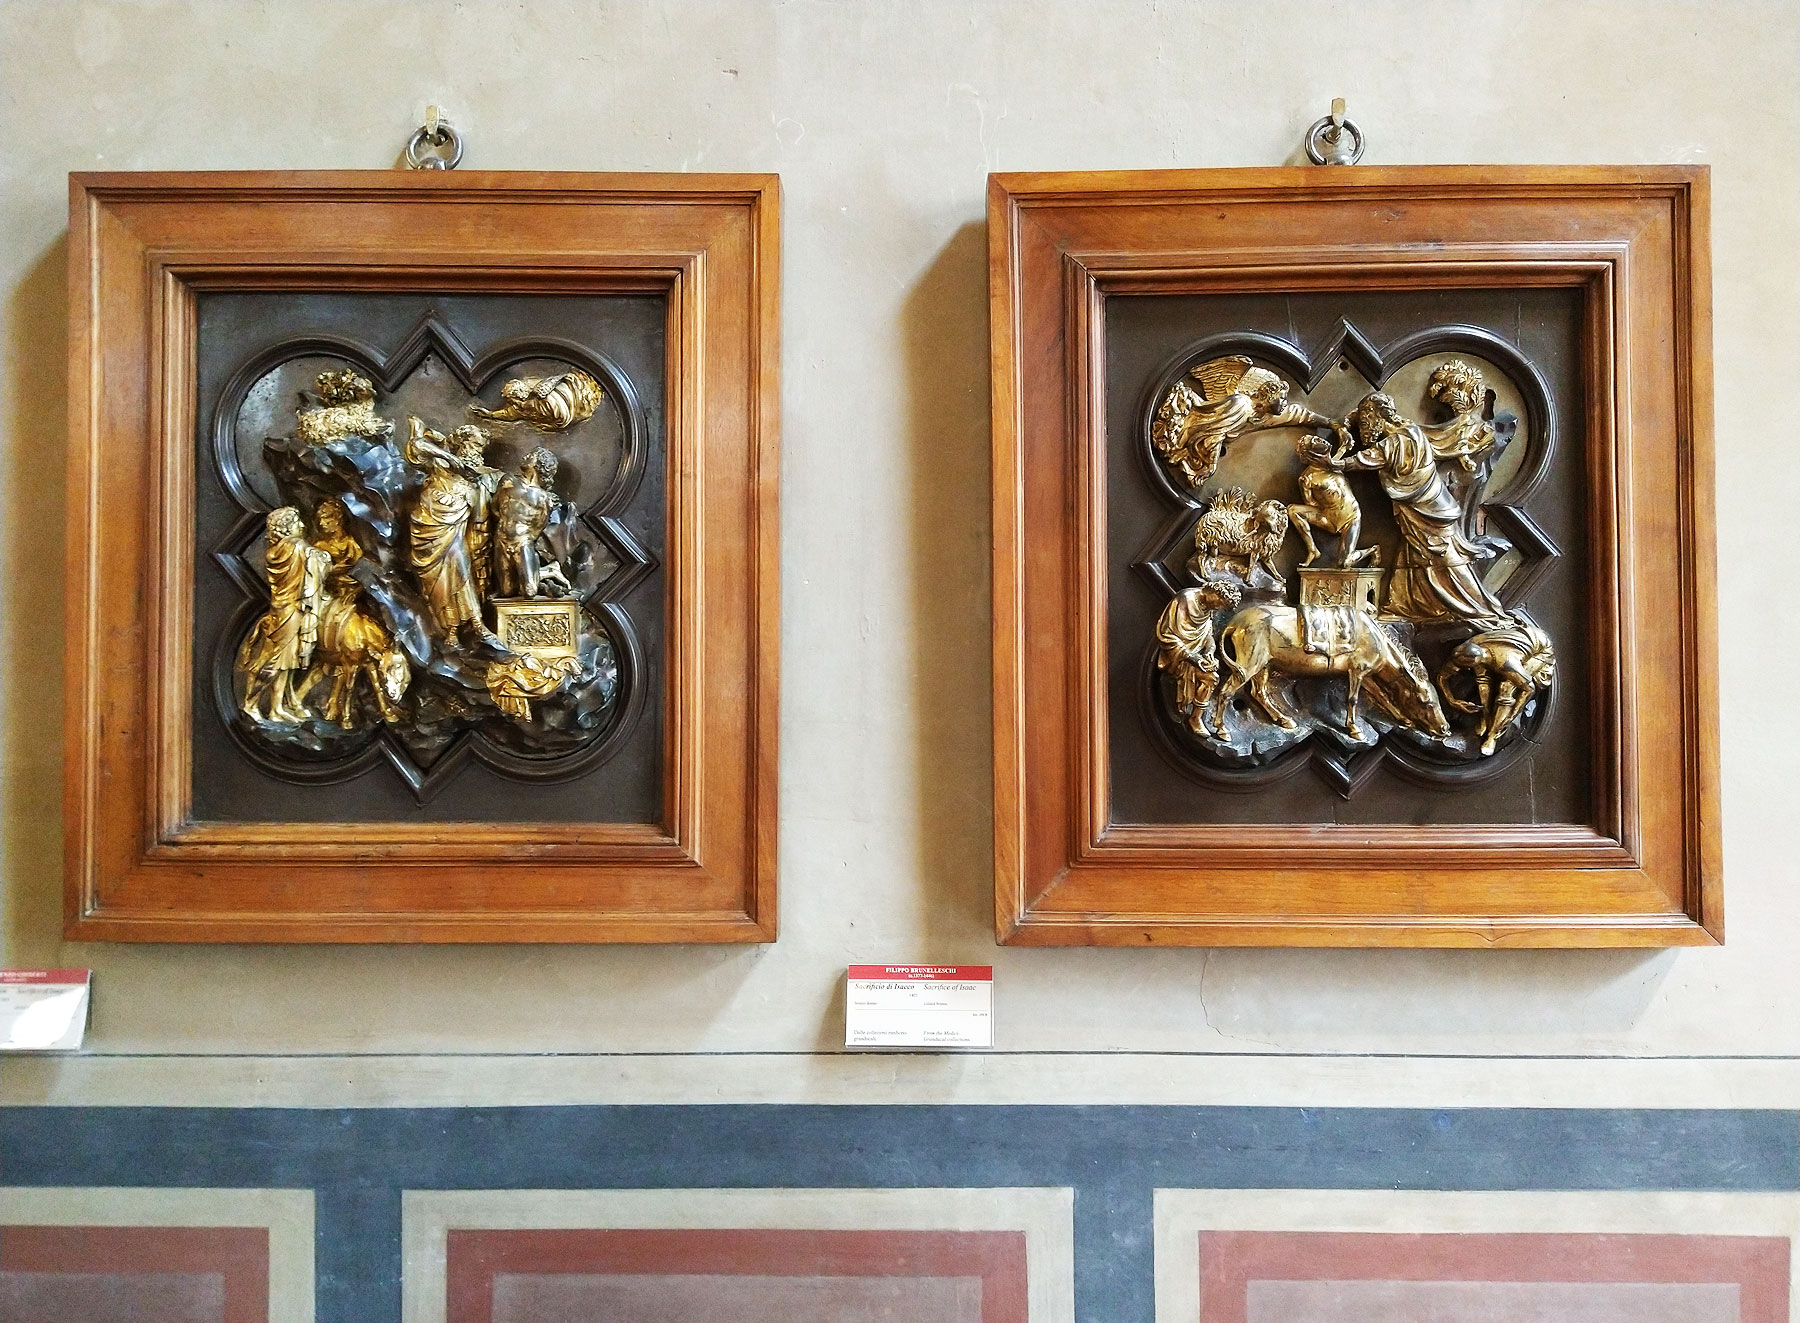 Le due formelle esposte al Museo Nazionale del Bargello
